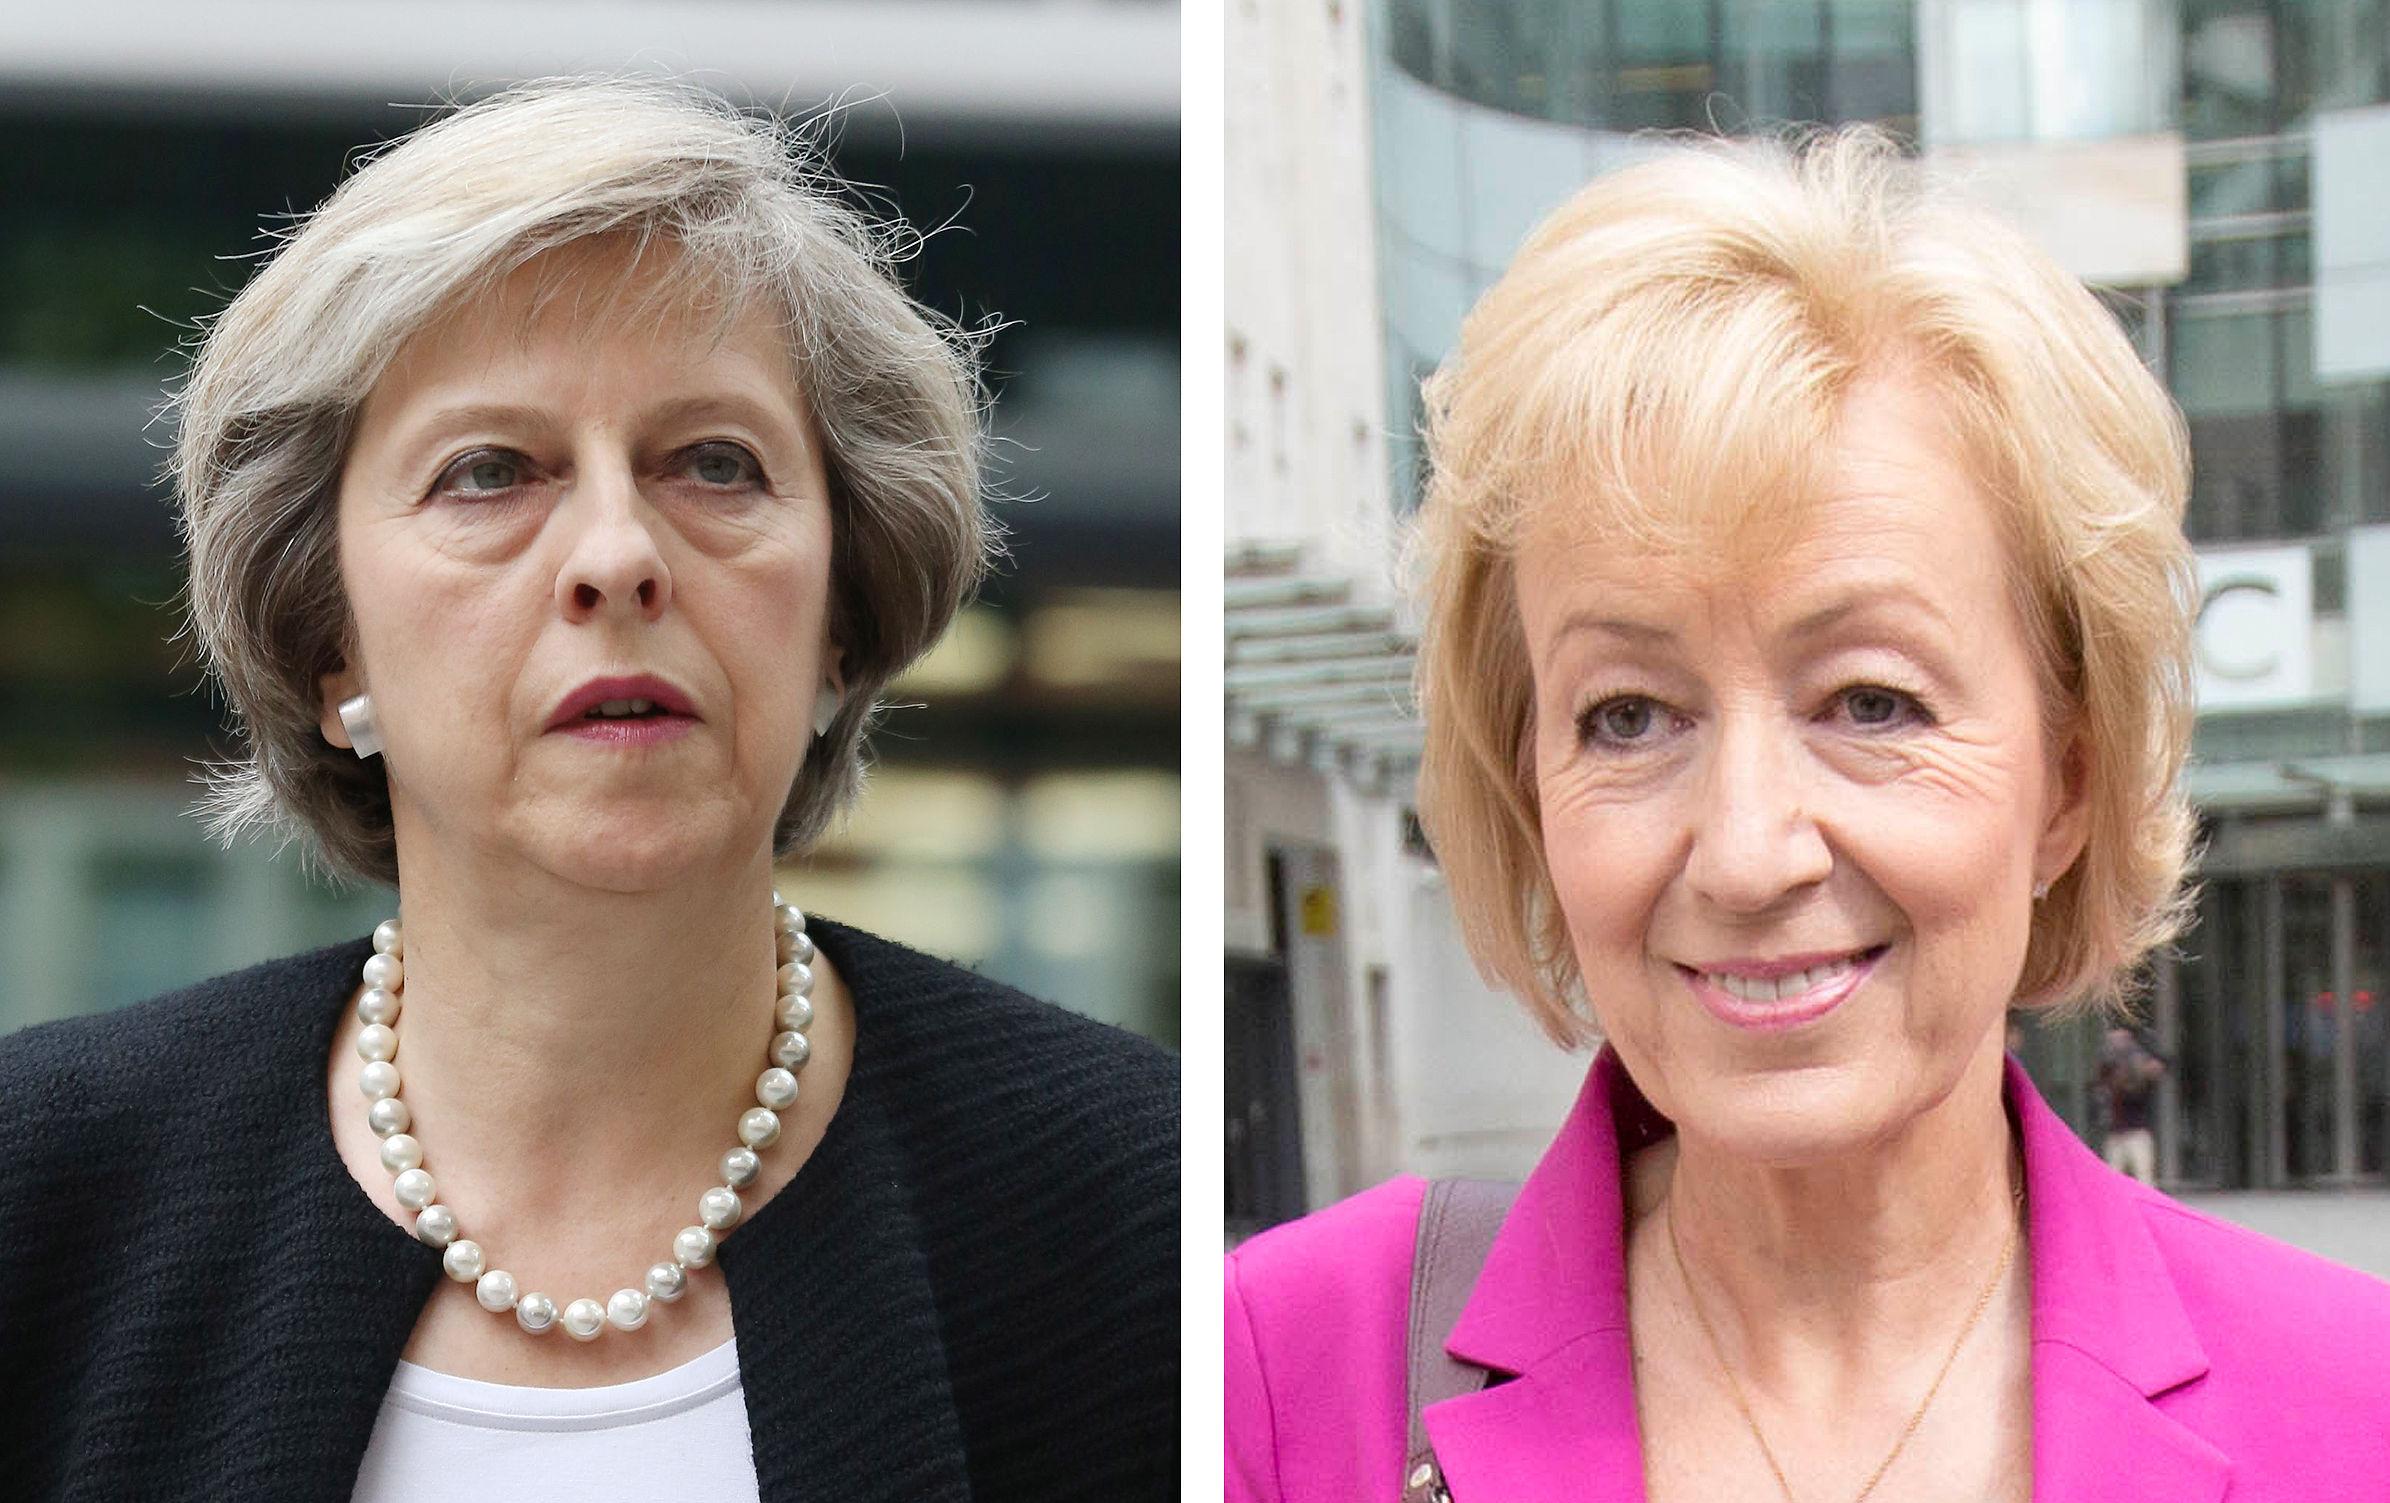 Inghilterra e primo ministro donna: dopo la Thatcher la politica si tinge di rosa